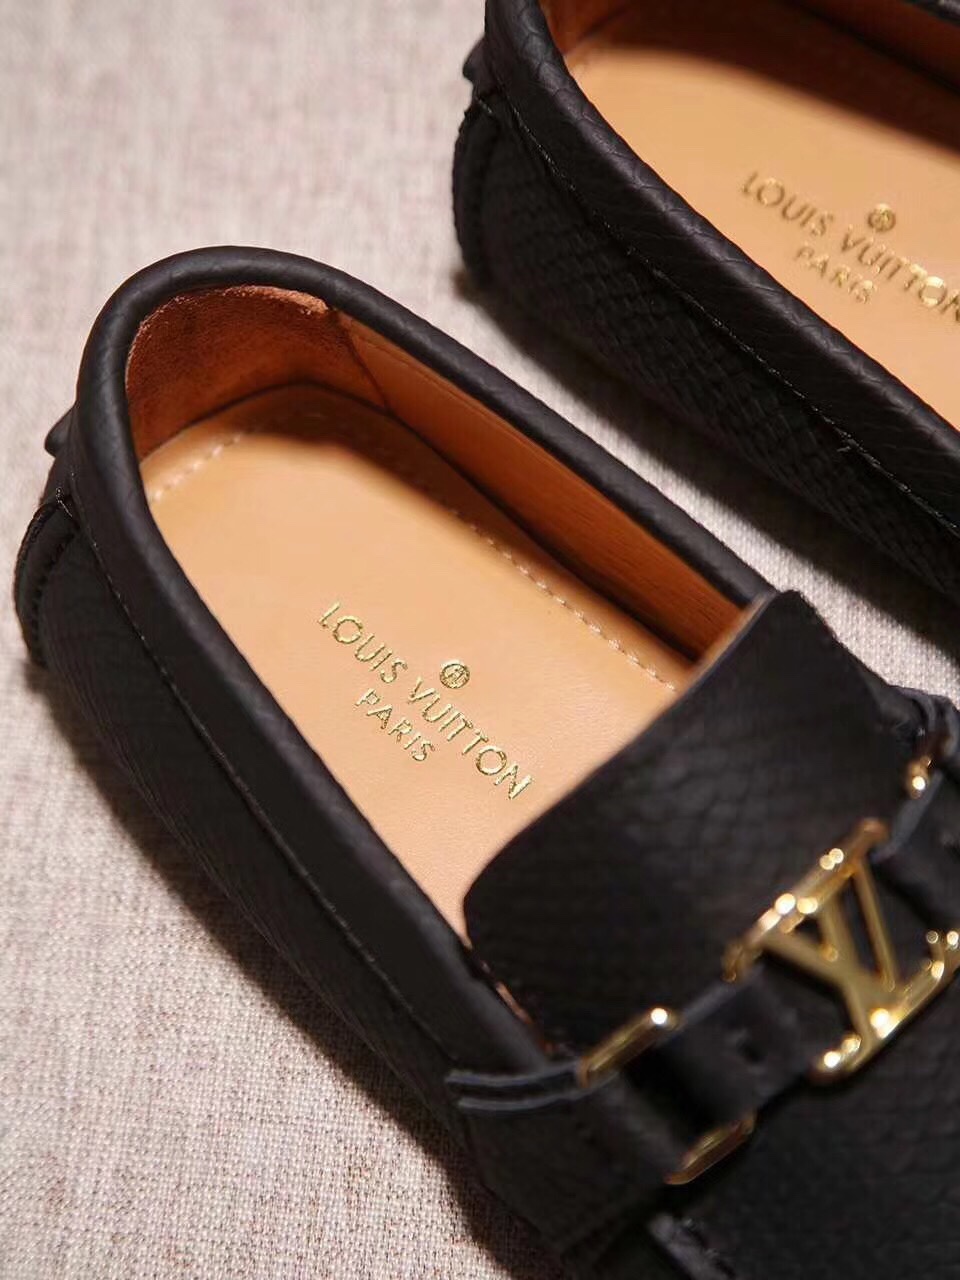 Giày lười nam Louis Vuitton siêu cấp - GNLV069